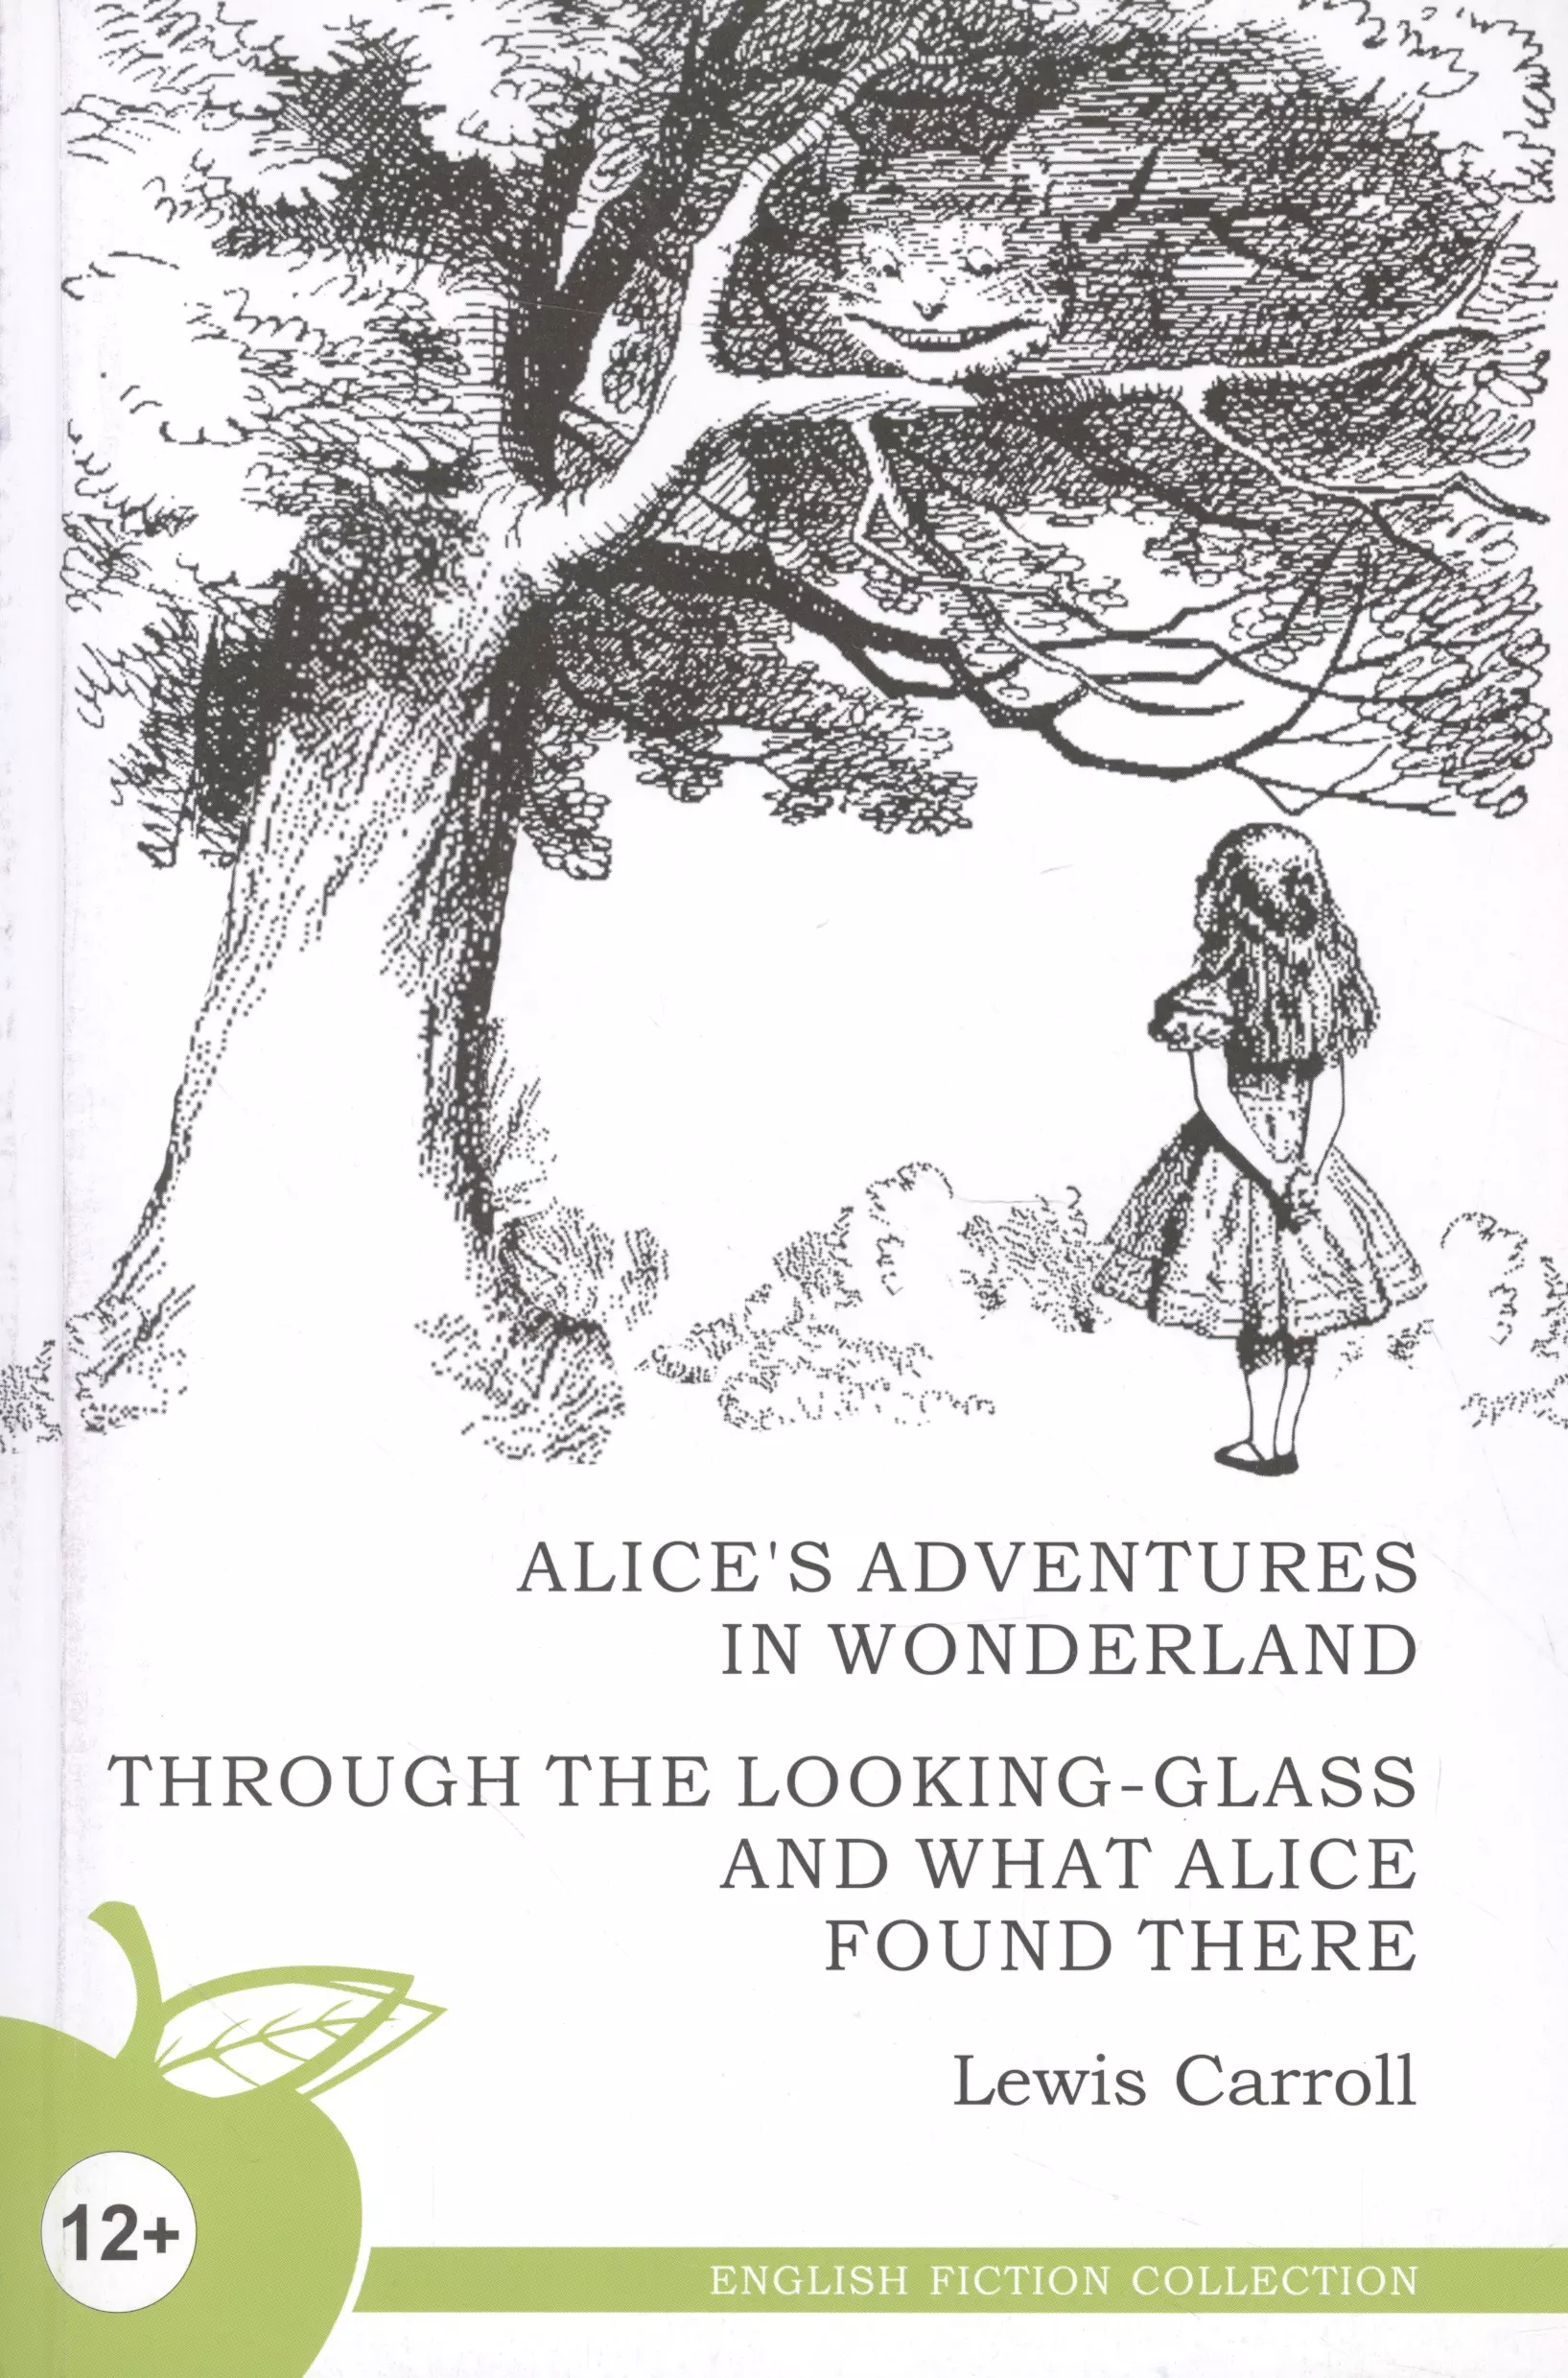 Кэрролл Льюис - Алиса в стране чудес: Алиса в Зазеркалье: на английском языке